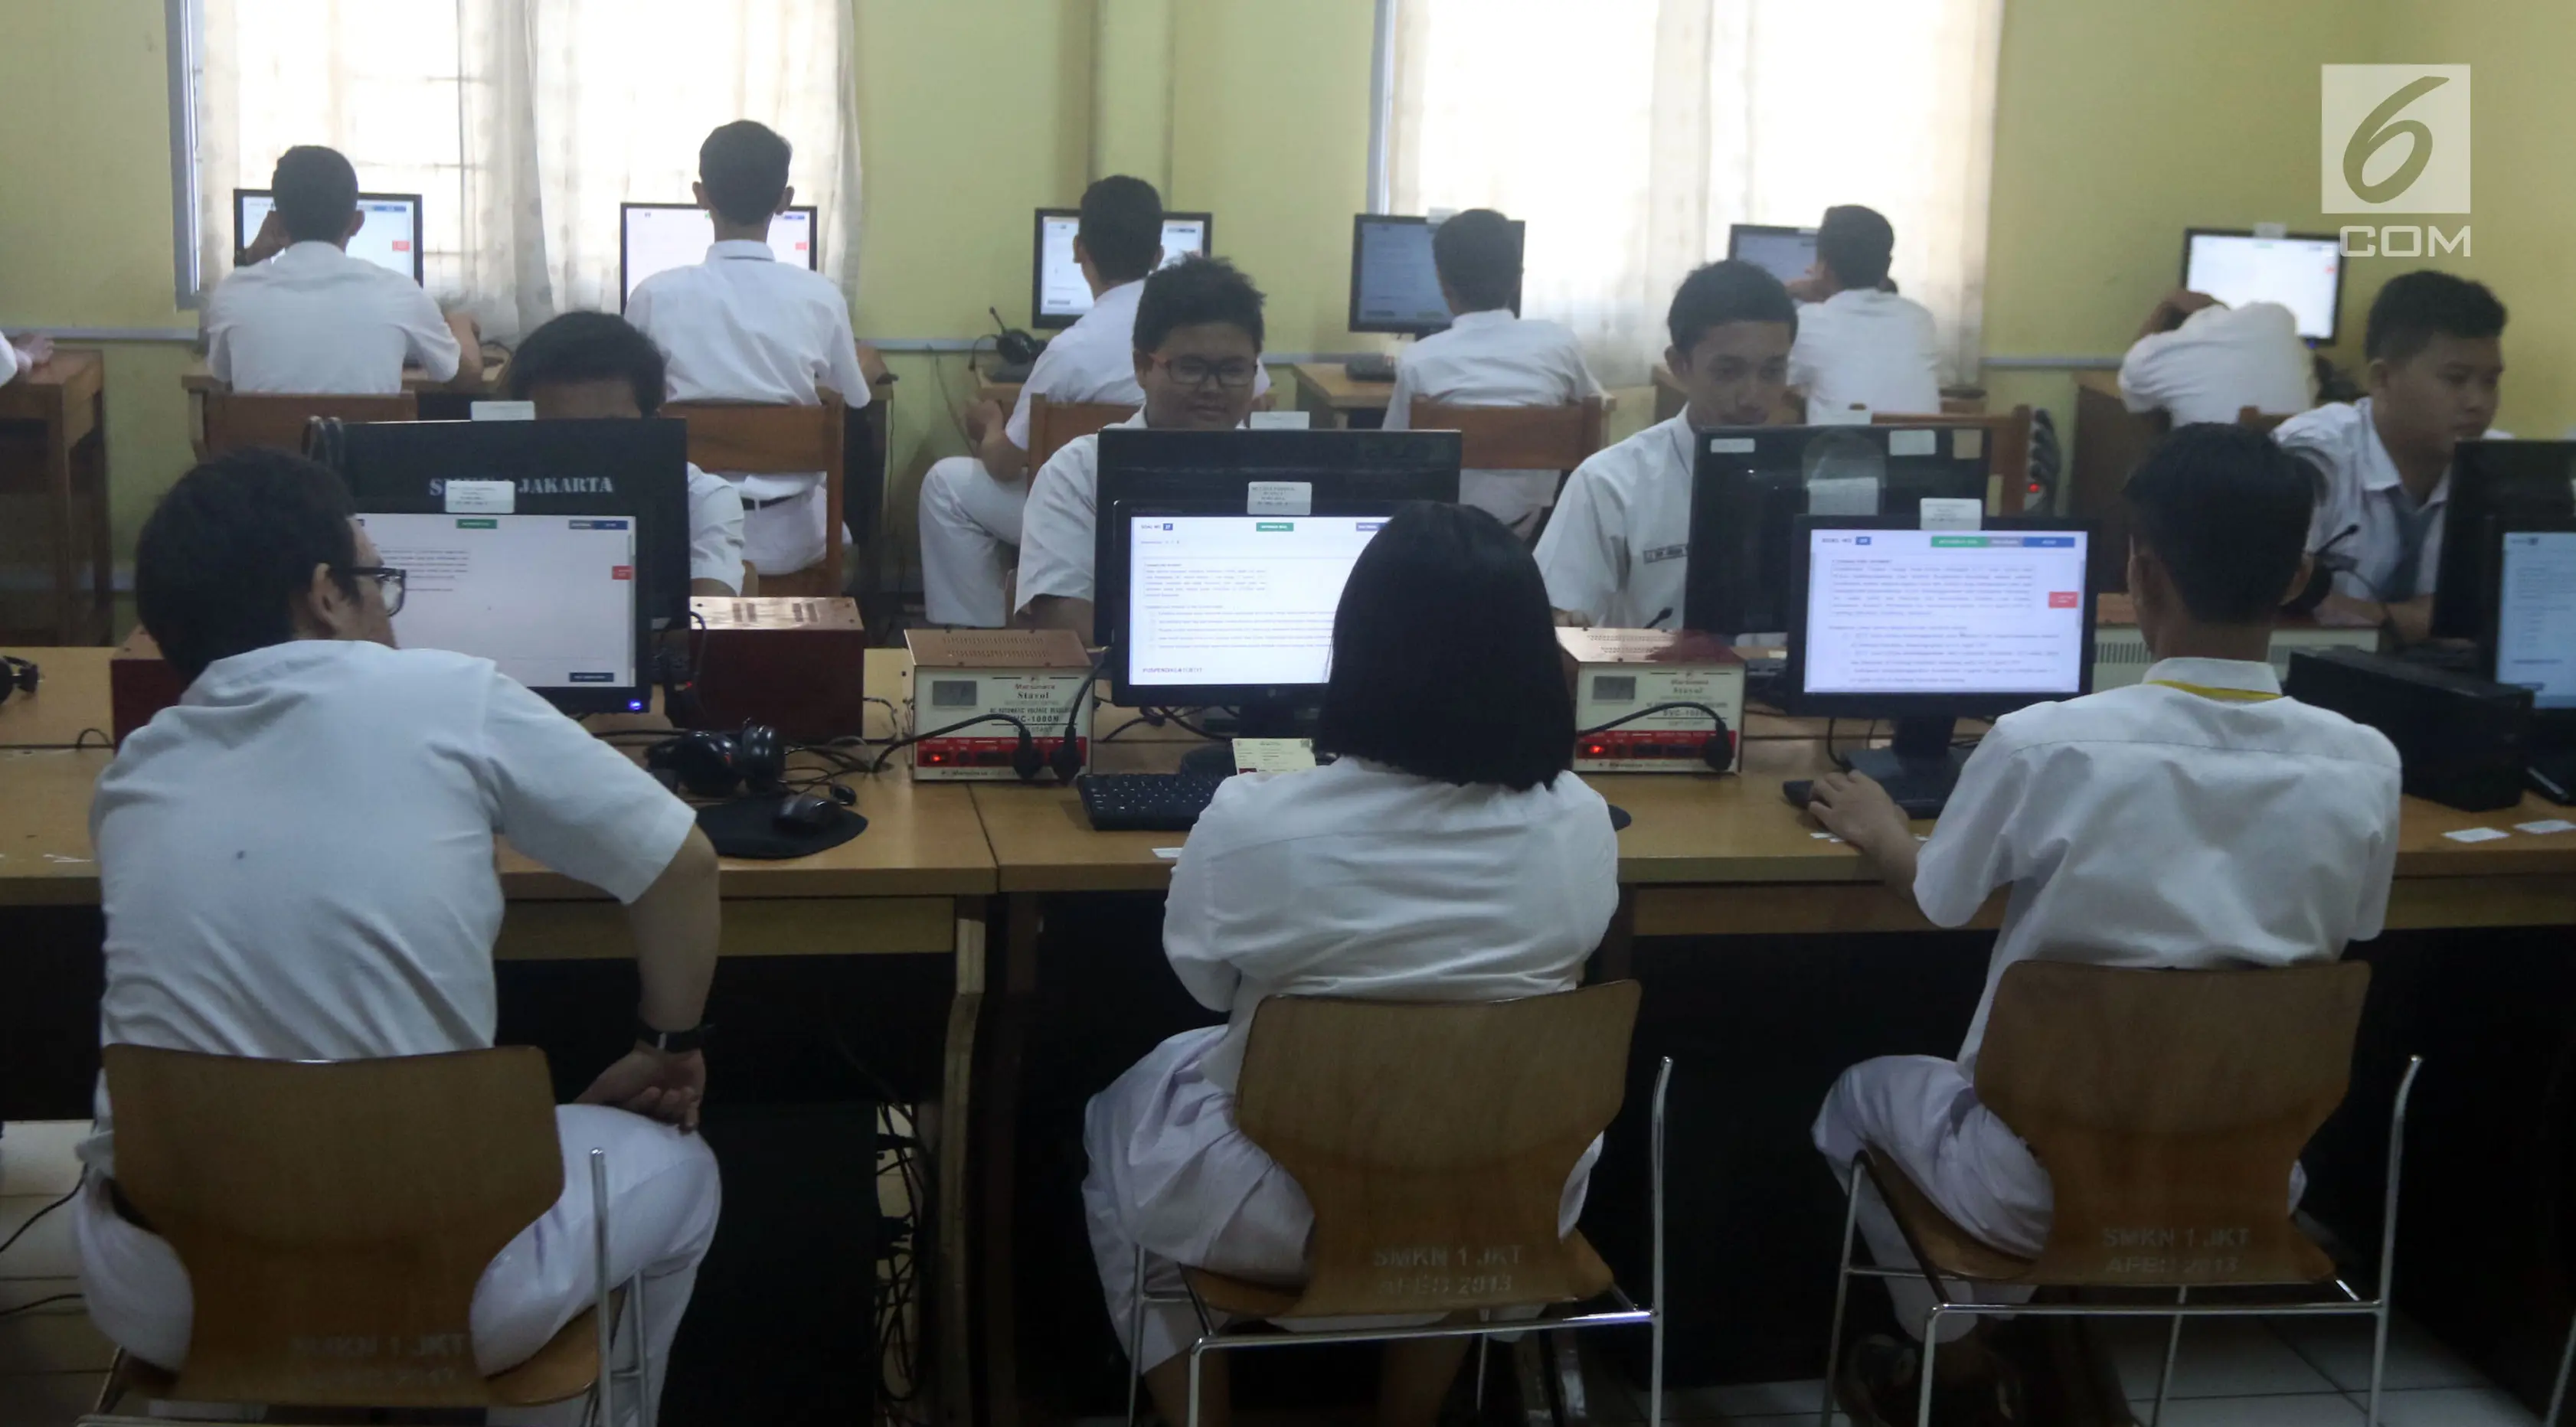 Sejumlah murid Sekolah Menengah Kejuruan (SMK) melaksanakan Ujian Nasional Berbasis Komputer (UNBK) di SMK Negeri 1, Jakarta, Senin (2/4). Untuk siswa Kejuruan, pelaksanaan UNBK dilaksanakan dari 2 April sampai 5 April 2018. (Liputan6.com/Arya Manggala)